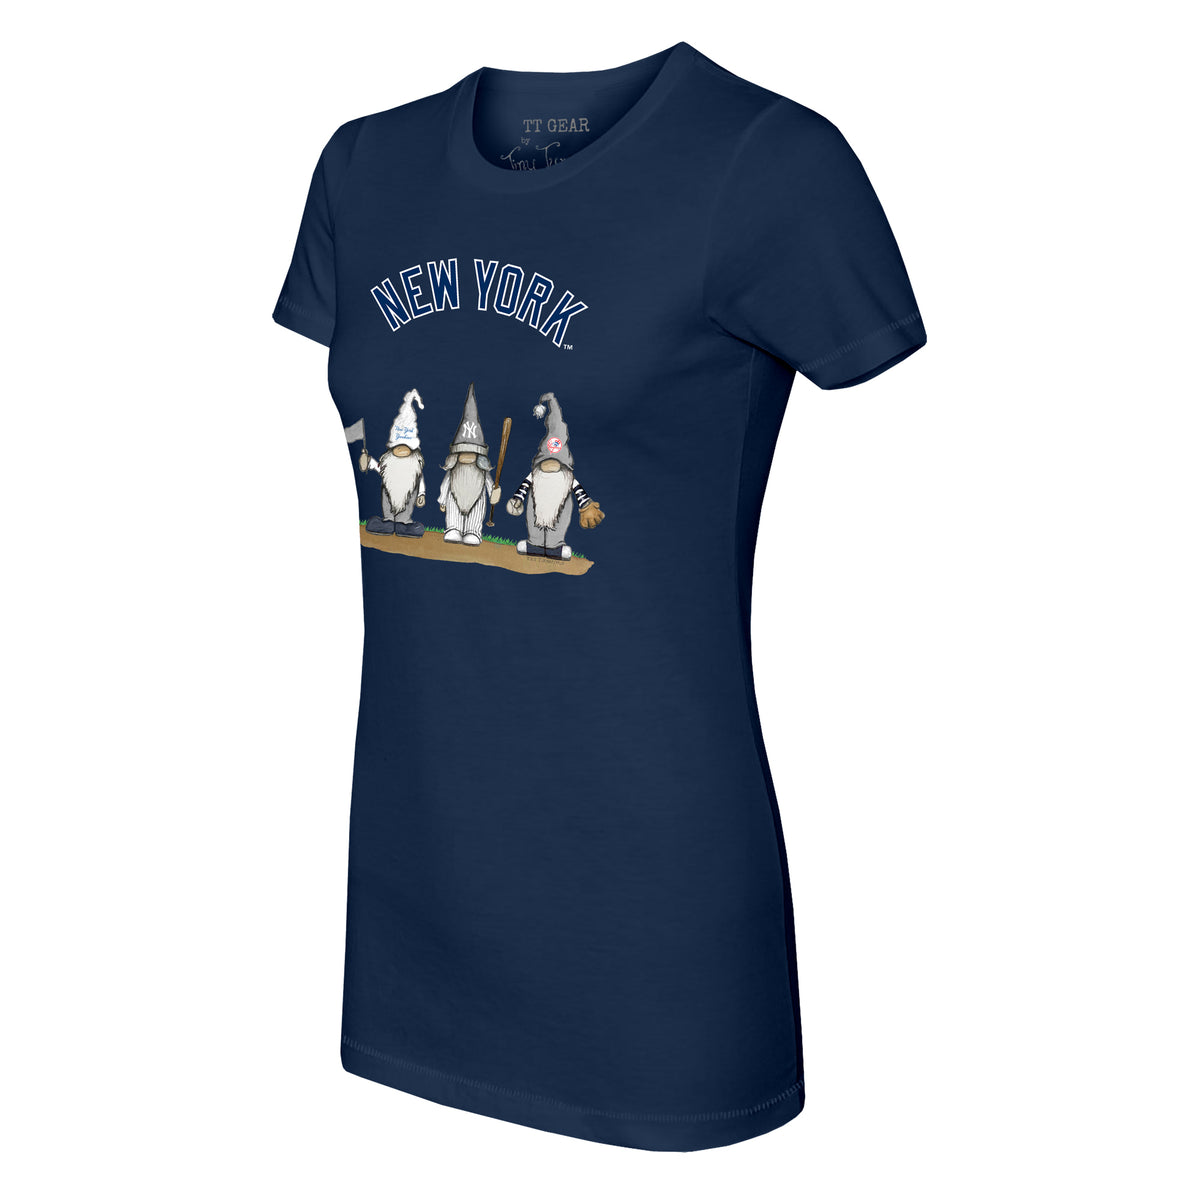 New York Yankees Gnomes Tee Shirt